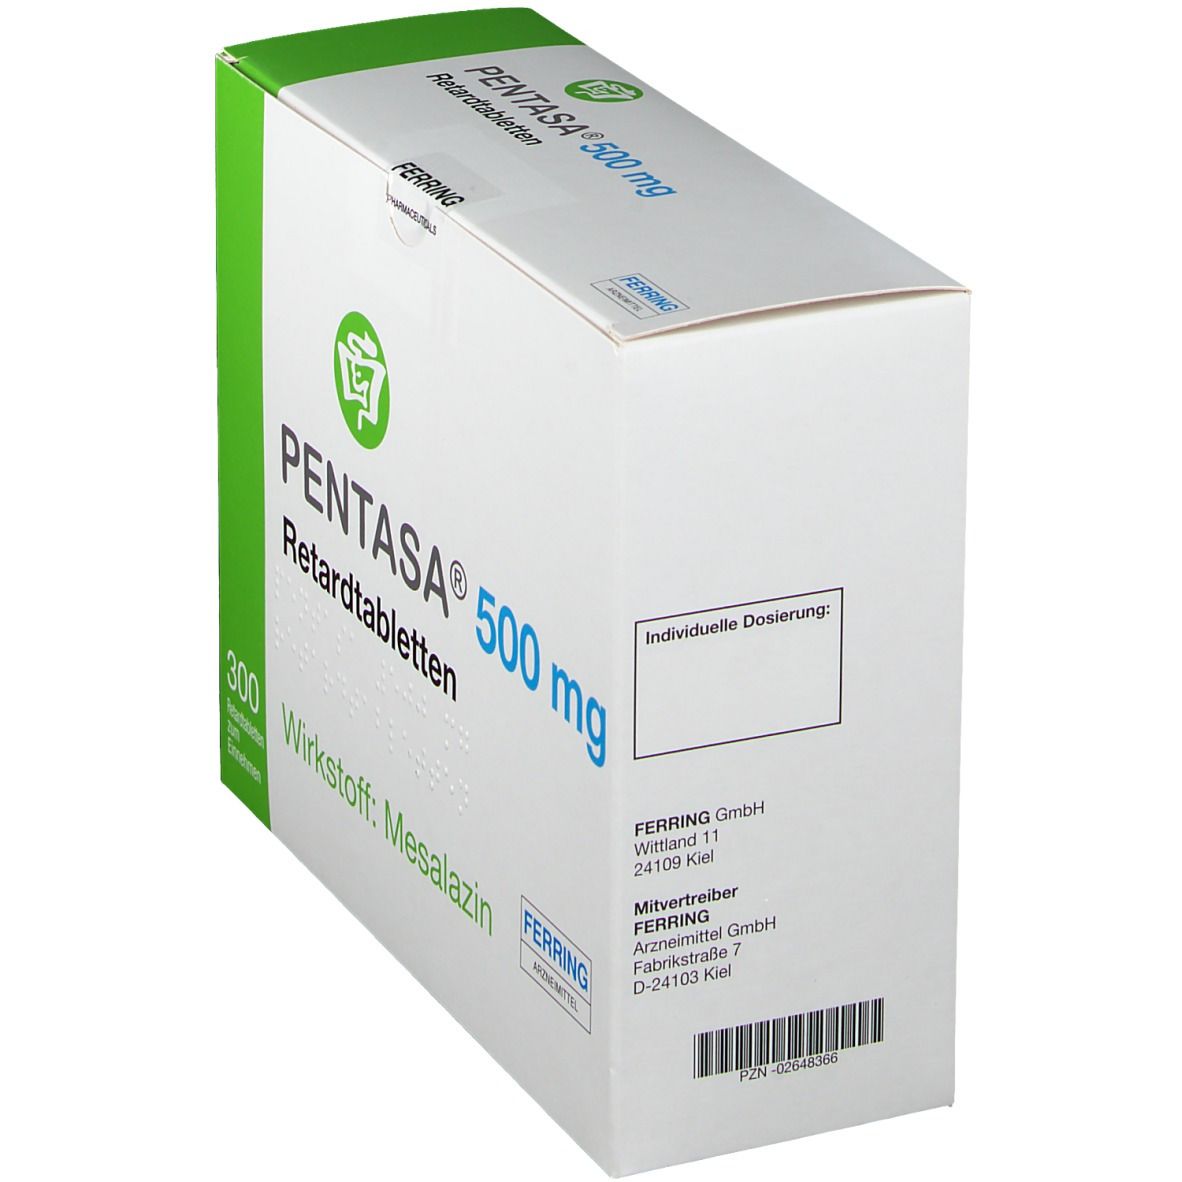 PENTASA® 500 mg